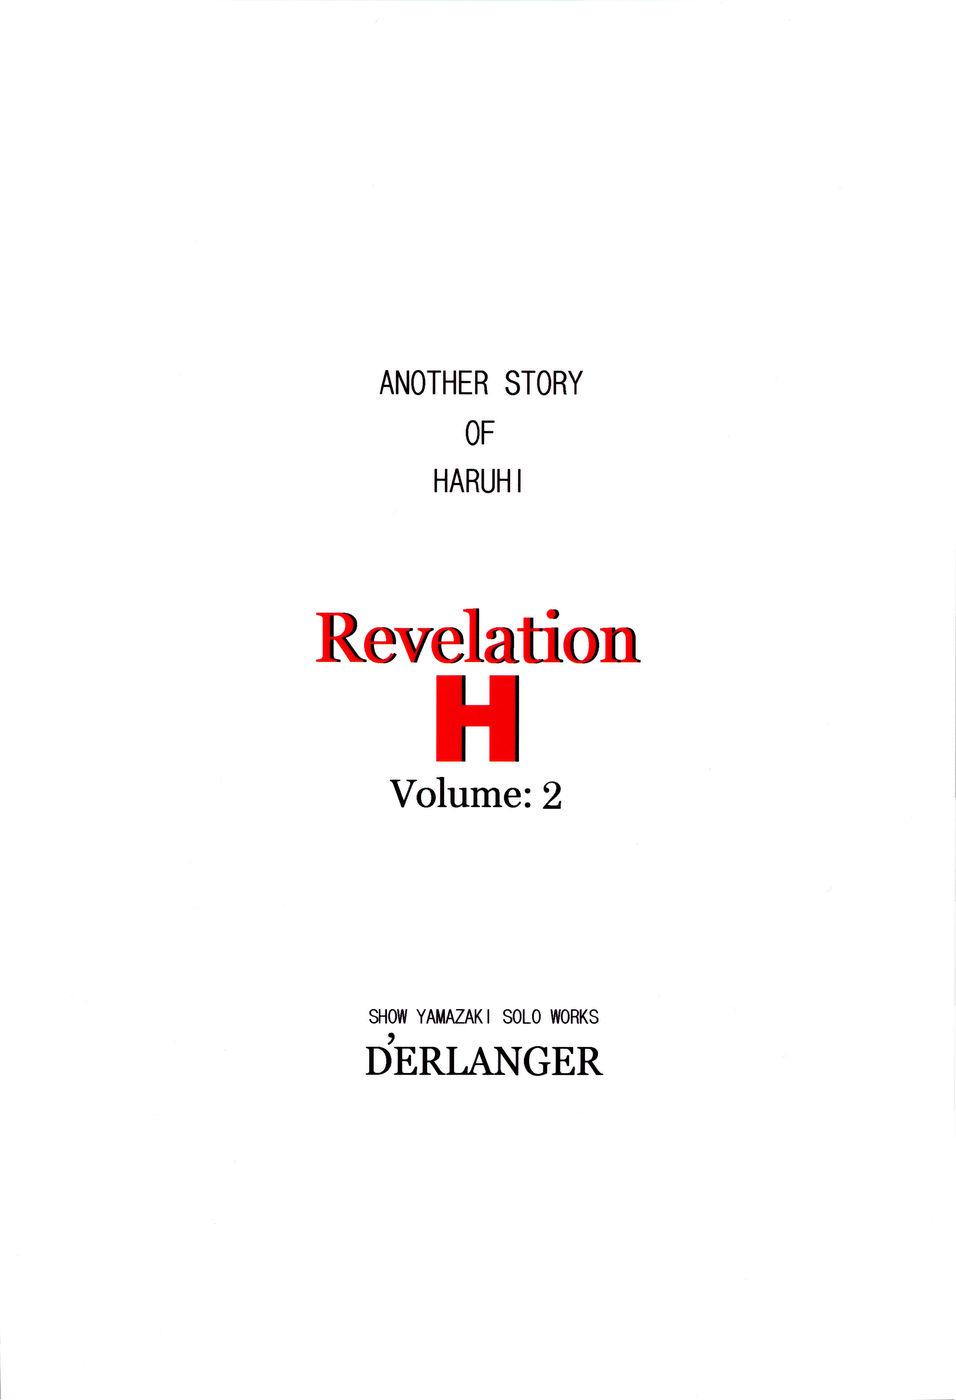 Revelation H Volume: 2 21